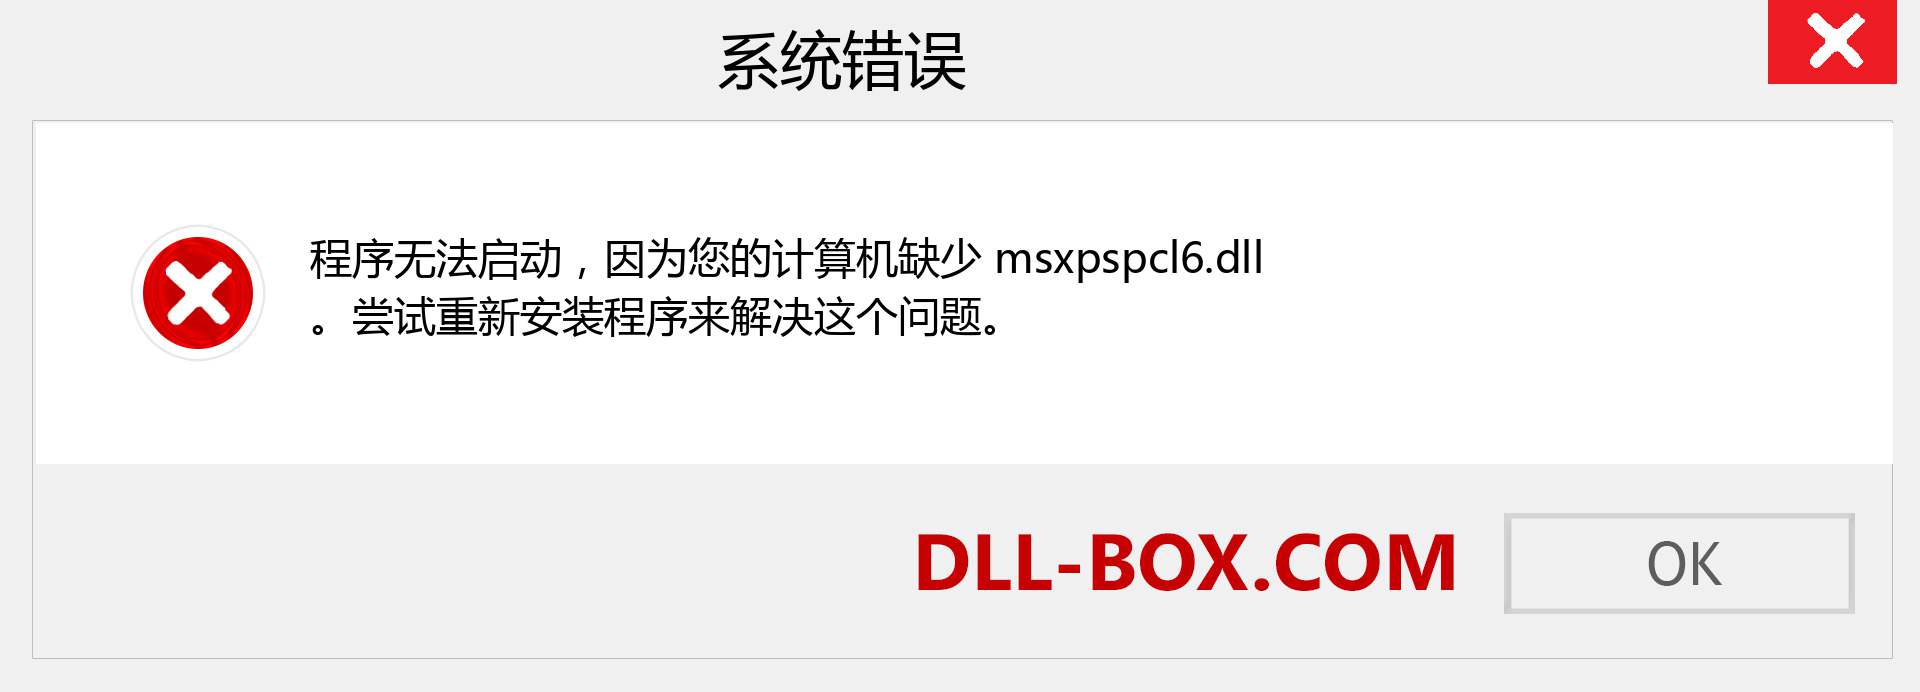 msxpspcl6.dll 文件丢失？。 适用于 Windows 7、8、10 的下载 - 修复 Windows、照片、图像上的 msxpspcl6 dll 丢失错误